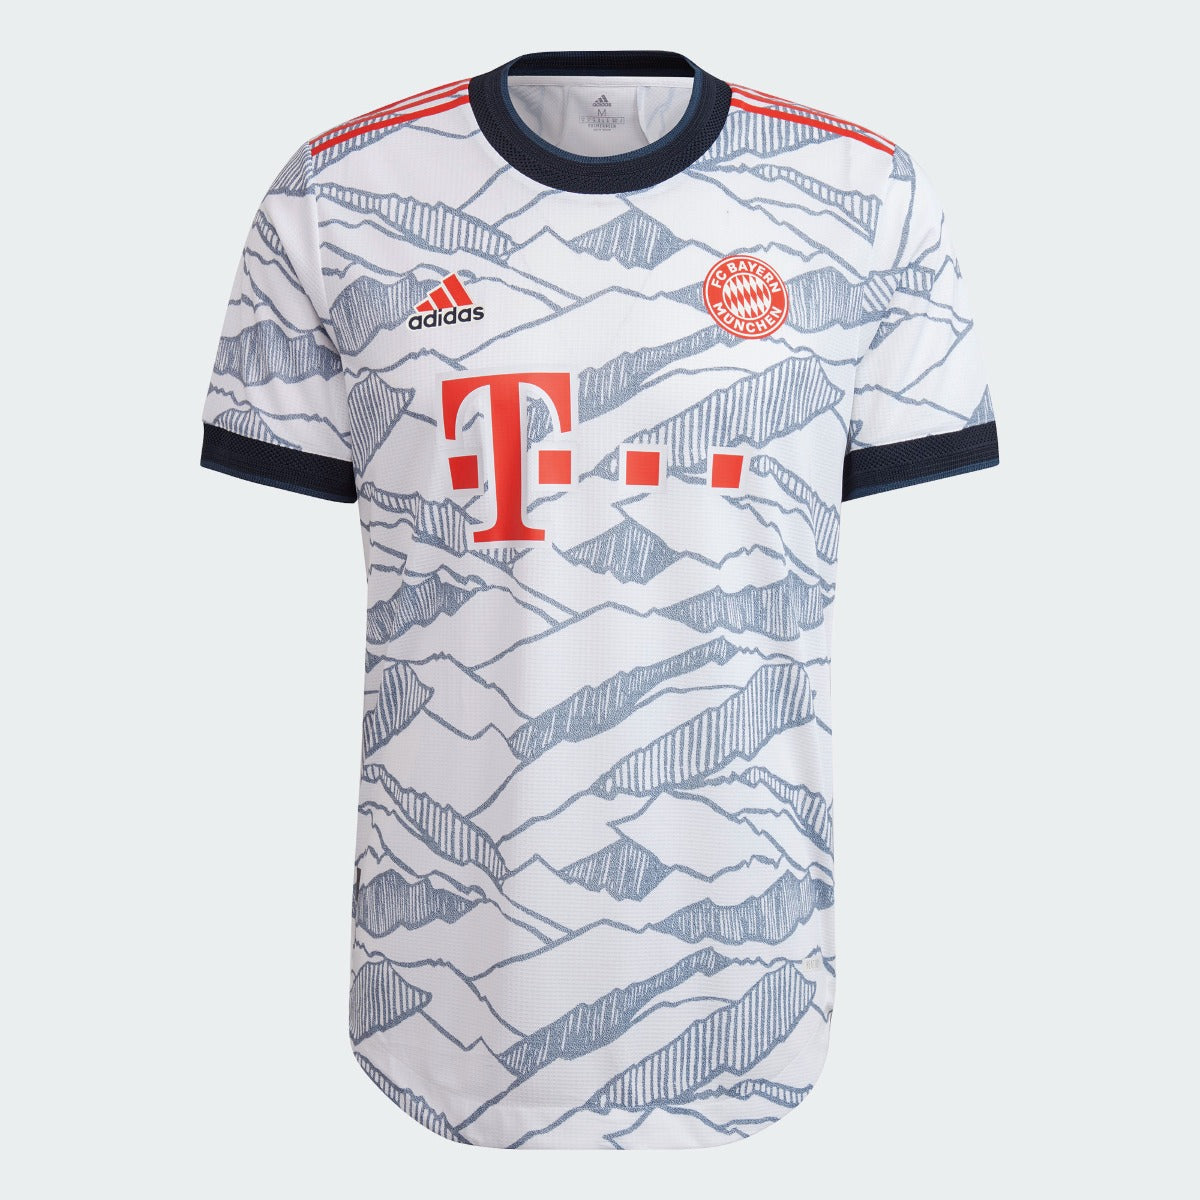 Adidas, Terza maglia autentica del Bayern Monaco Adidas 2021-22 - Bianco